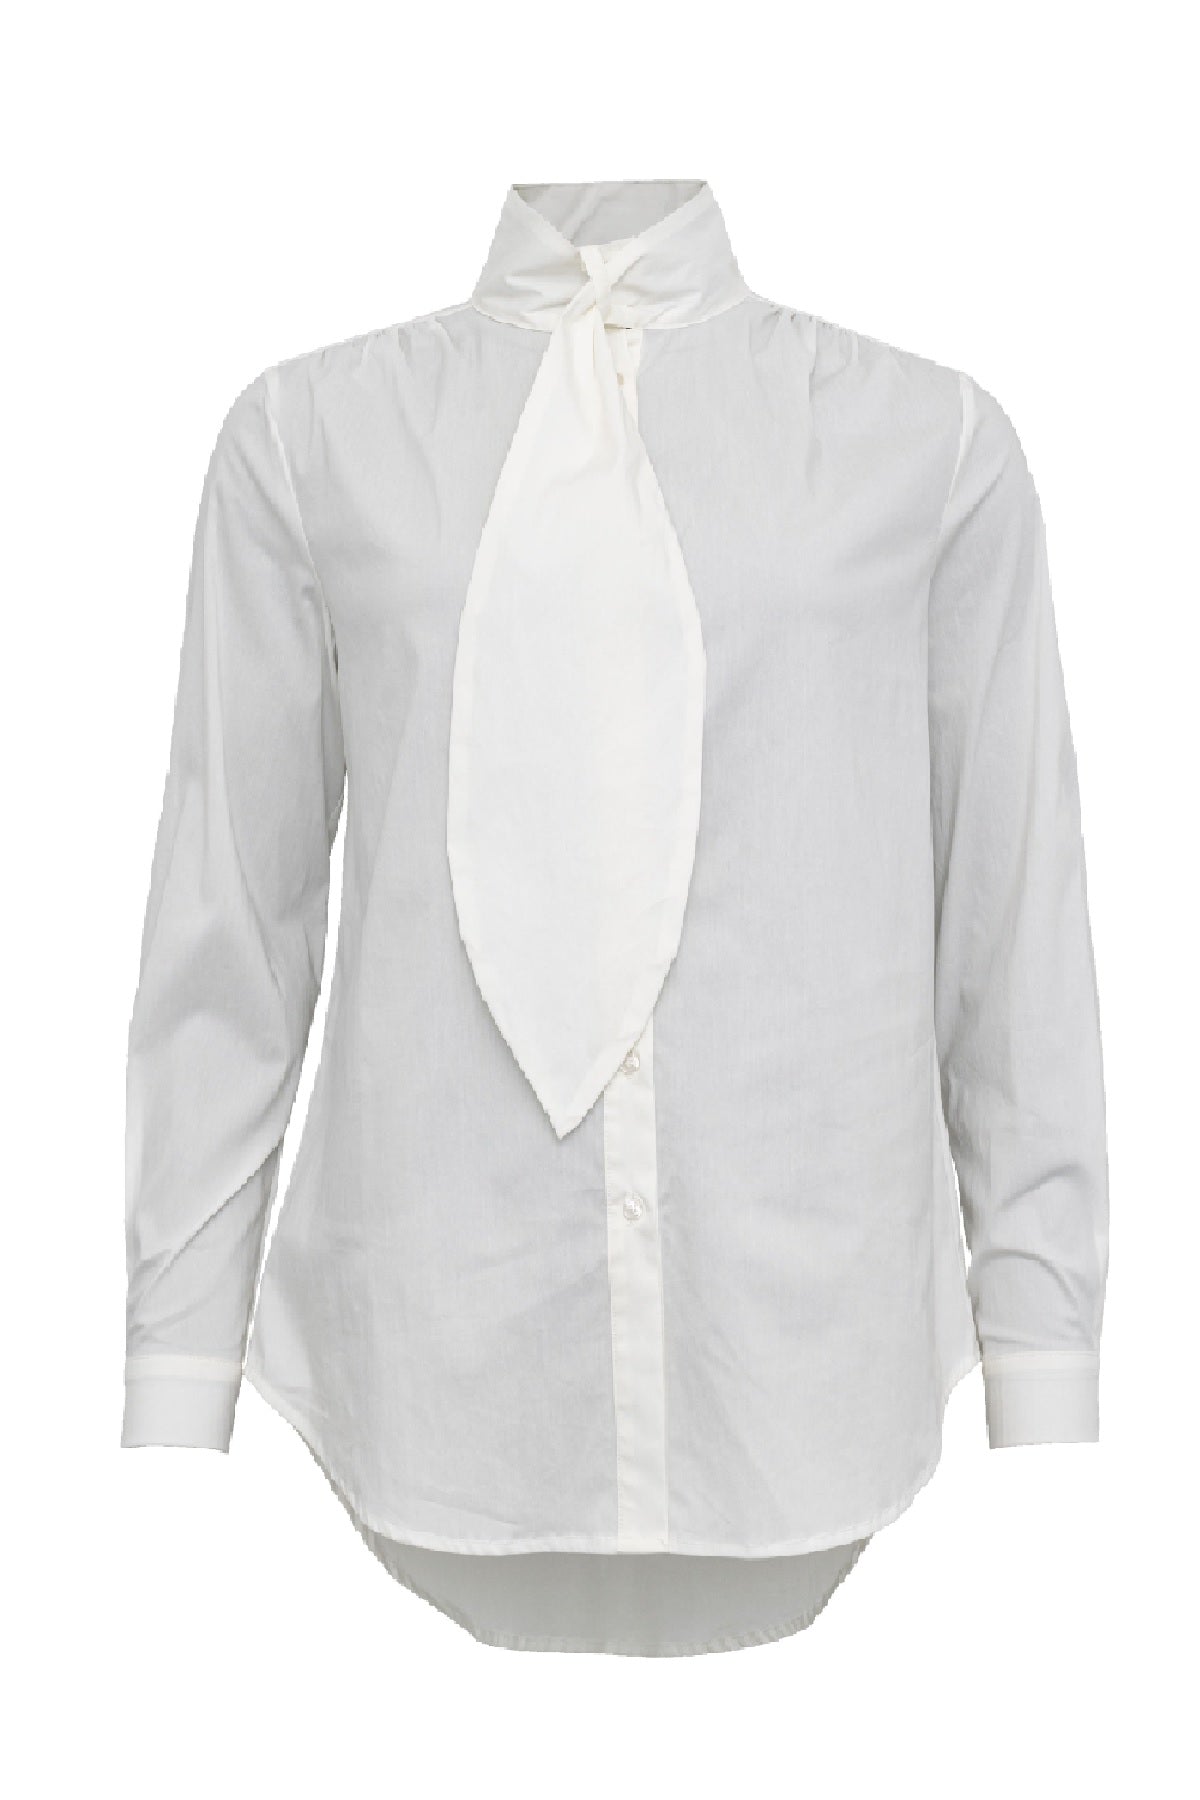 Costamani Tie Shirt, White